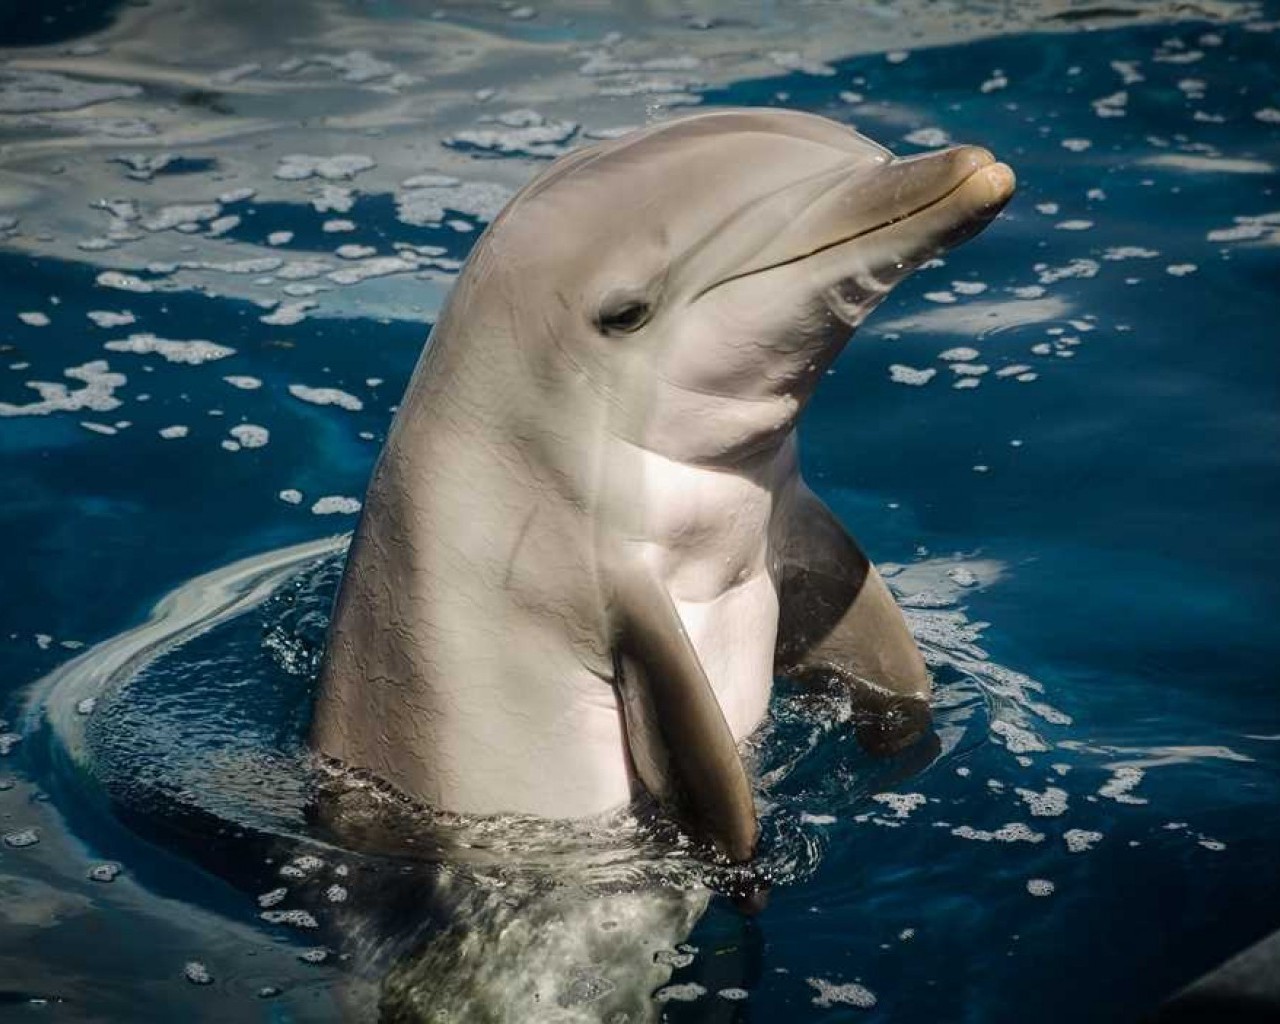 Поразительные способности и удивительный мир дельфинов - от обилия информации до социального взаимодействия